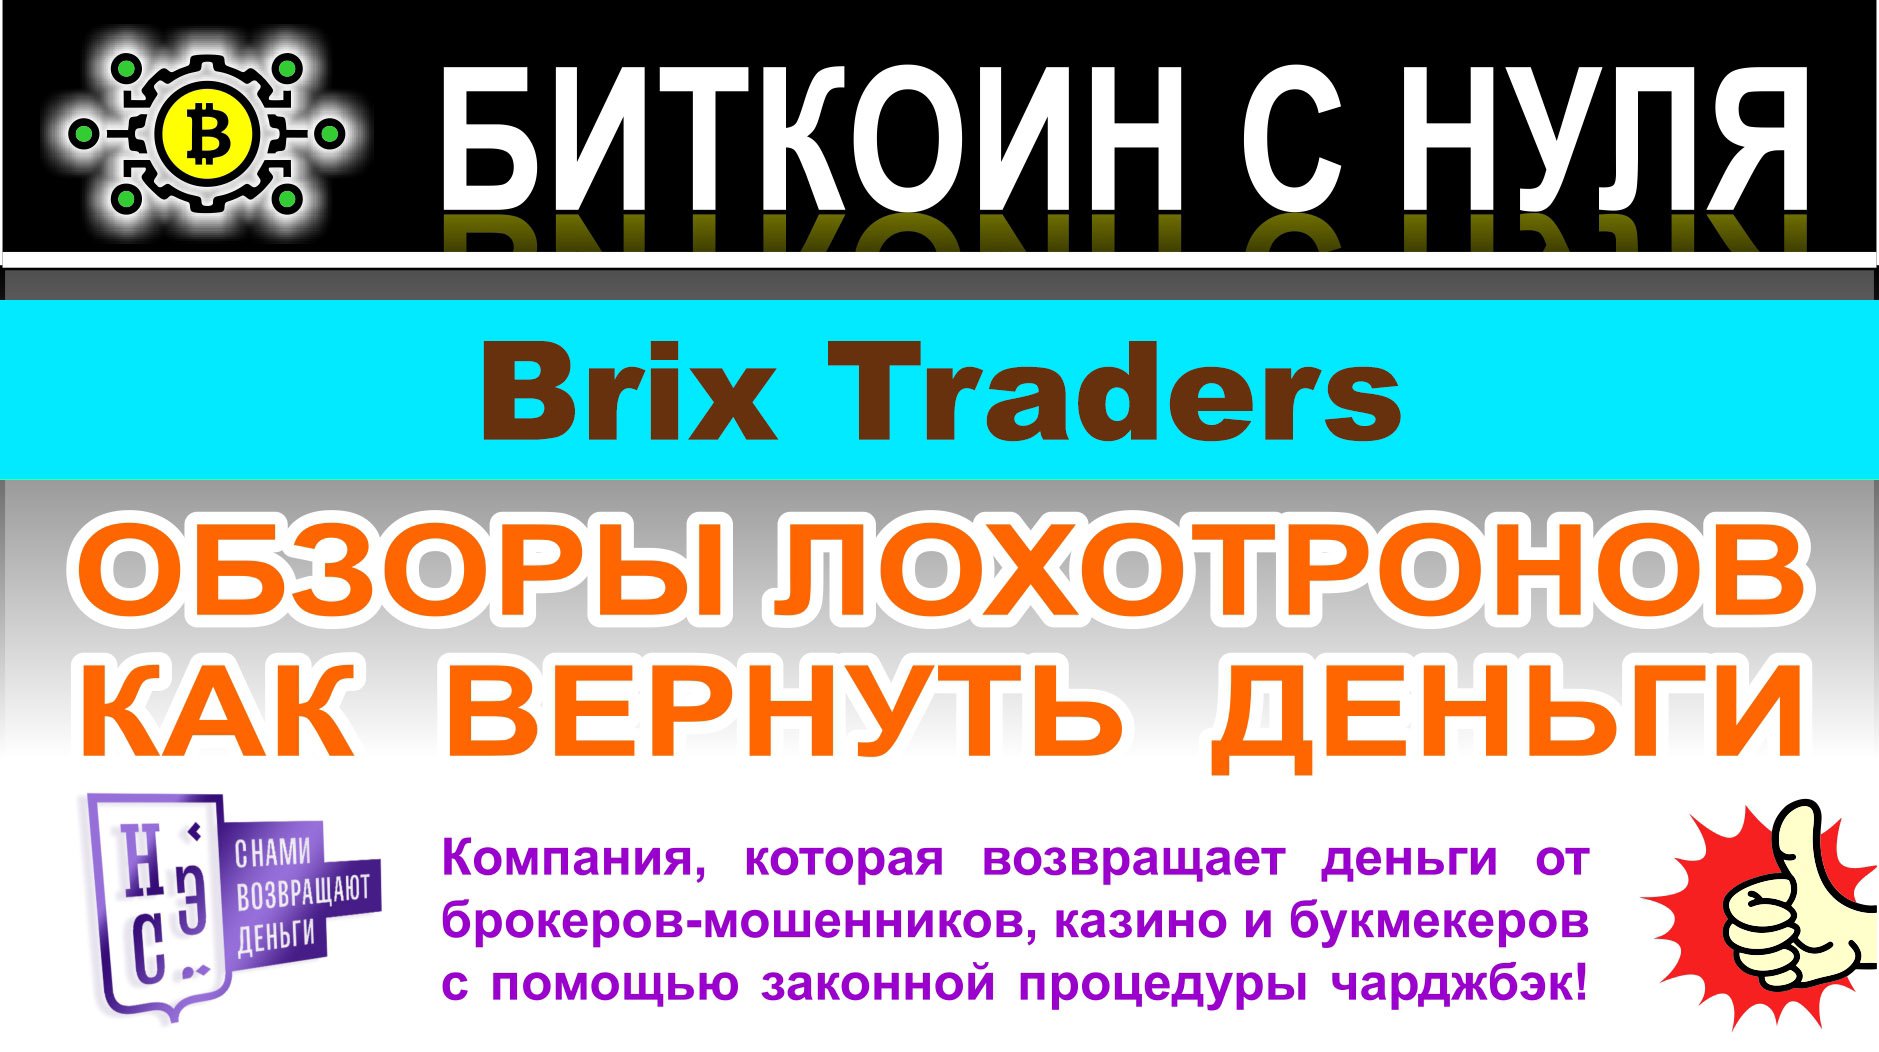 Обзор торговой площадки Brix Traders. Снова очередной лохотрон и мошенники. Отзывы.